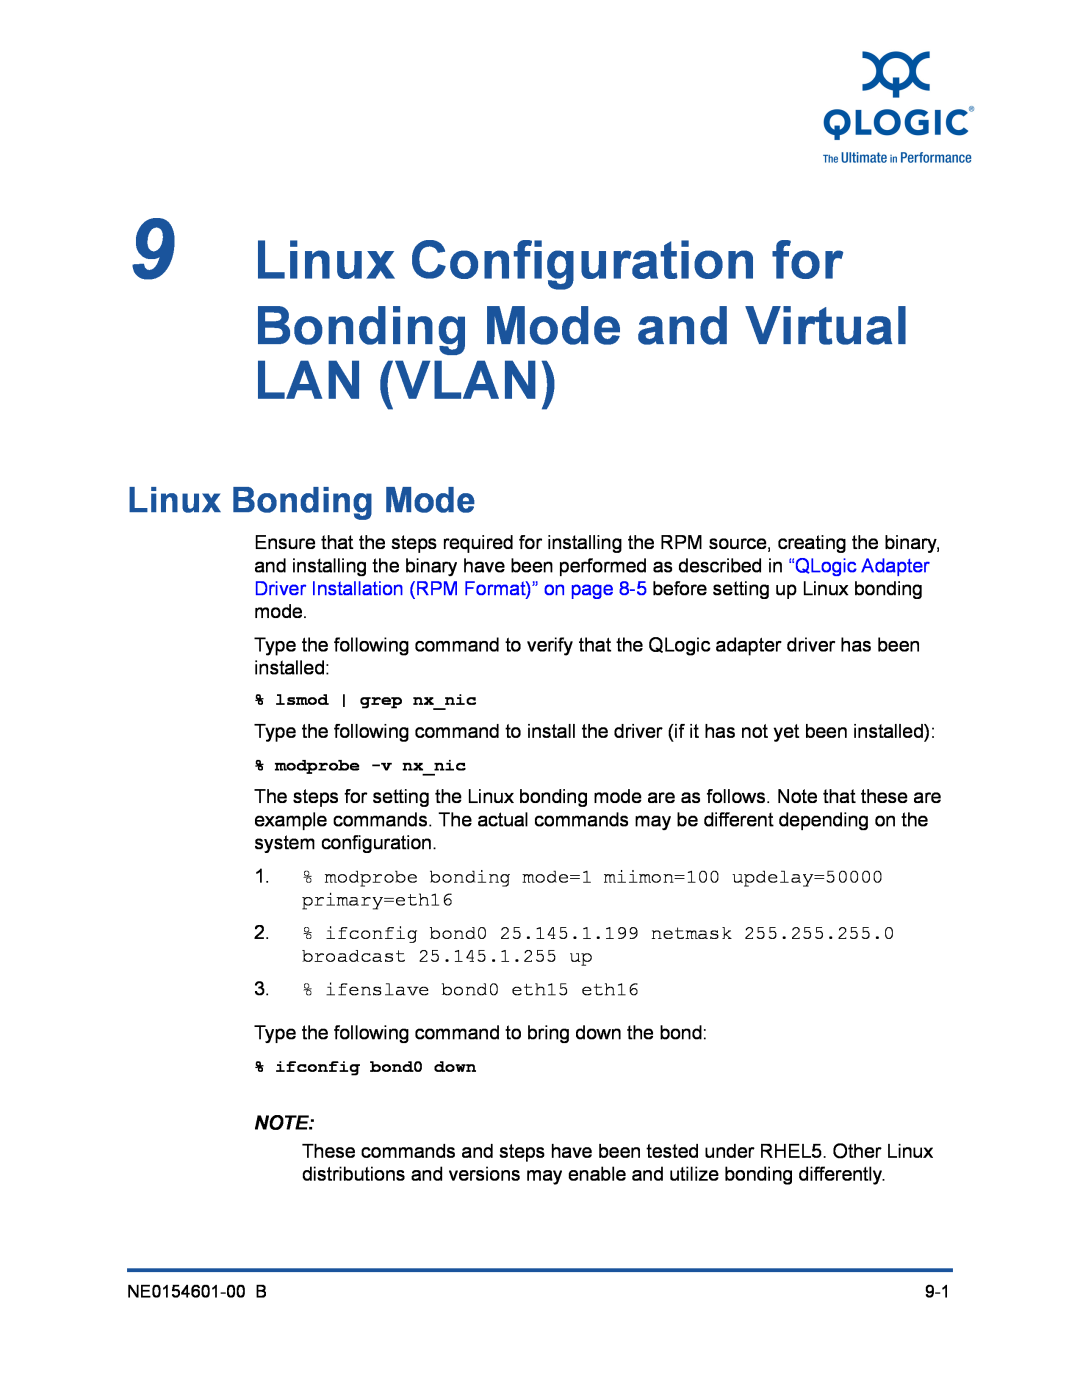 Q-Logic 3000, 3100 manual Linux Configuration for Bonding Mode and Virtual LAN VLAN, Linux Bonding Mode 